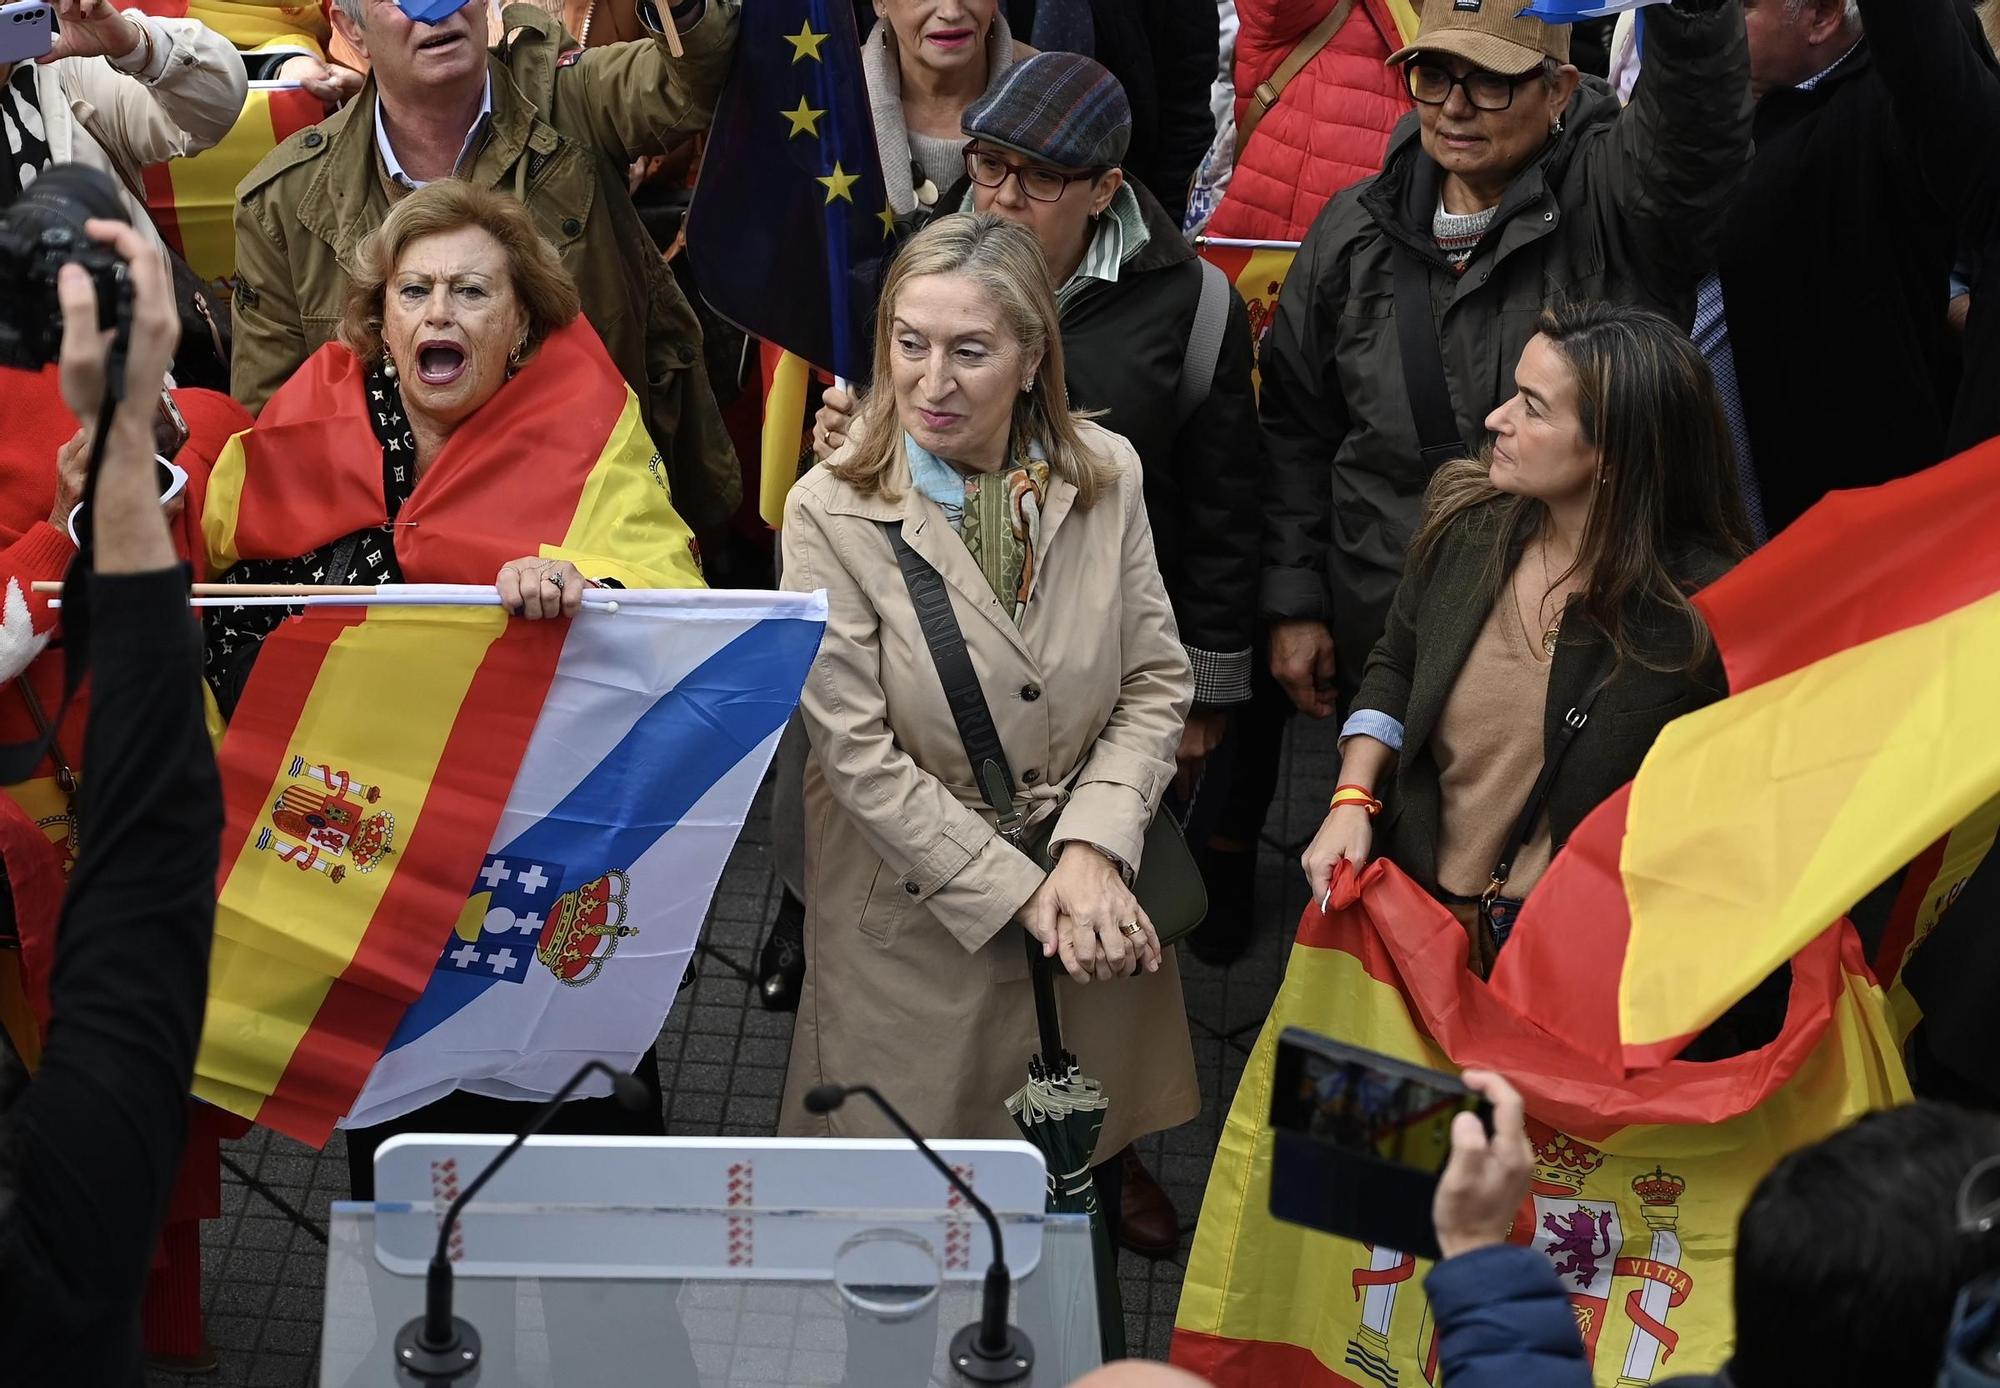 Miles de personas claman en Galicia contra la amnistía: "España no se vende"